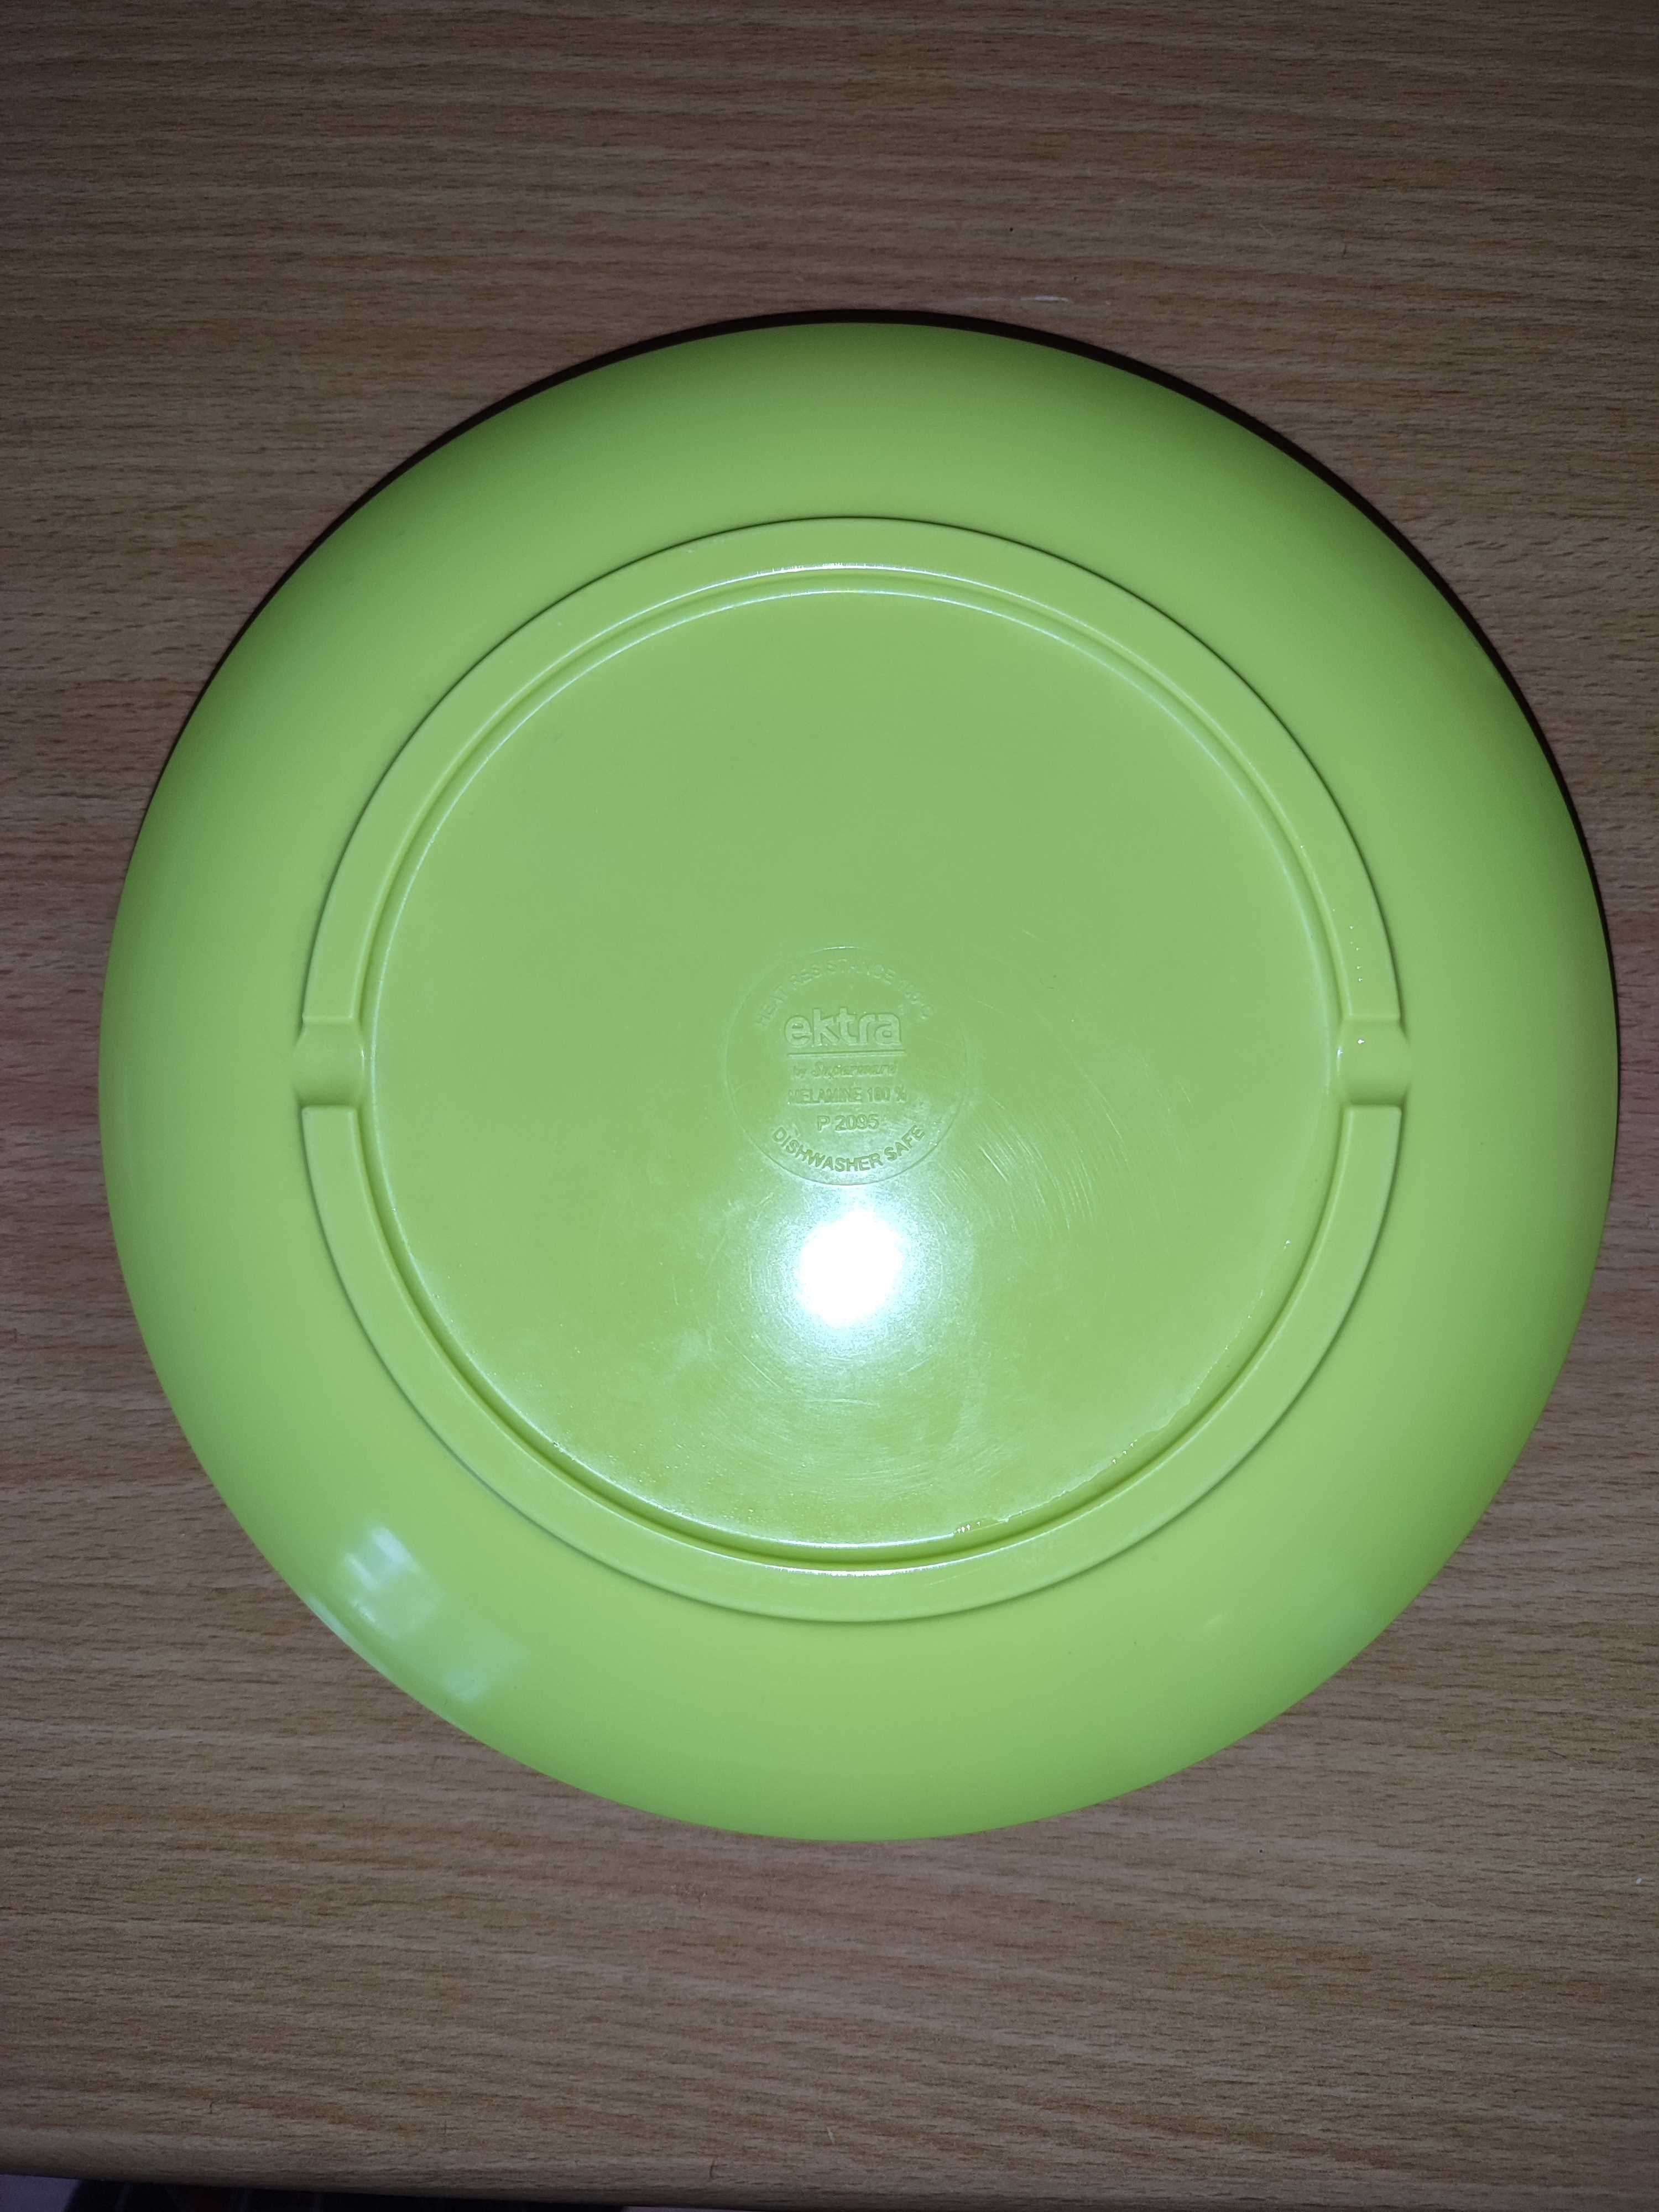 Набор из пластиковых тарелок Ektra, салатовый цвет, 4+2 штуки